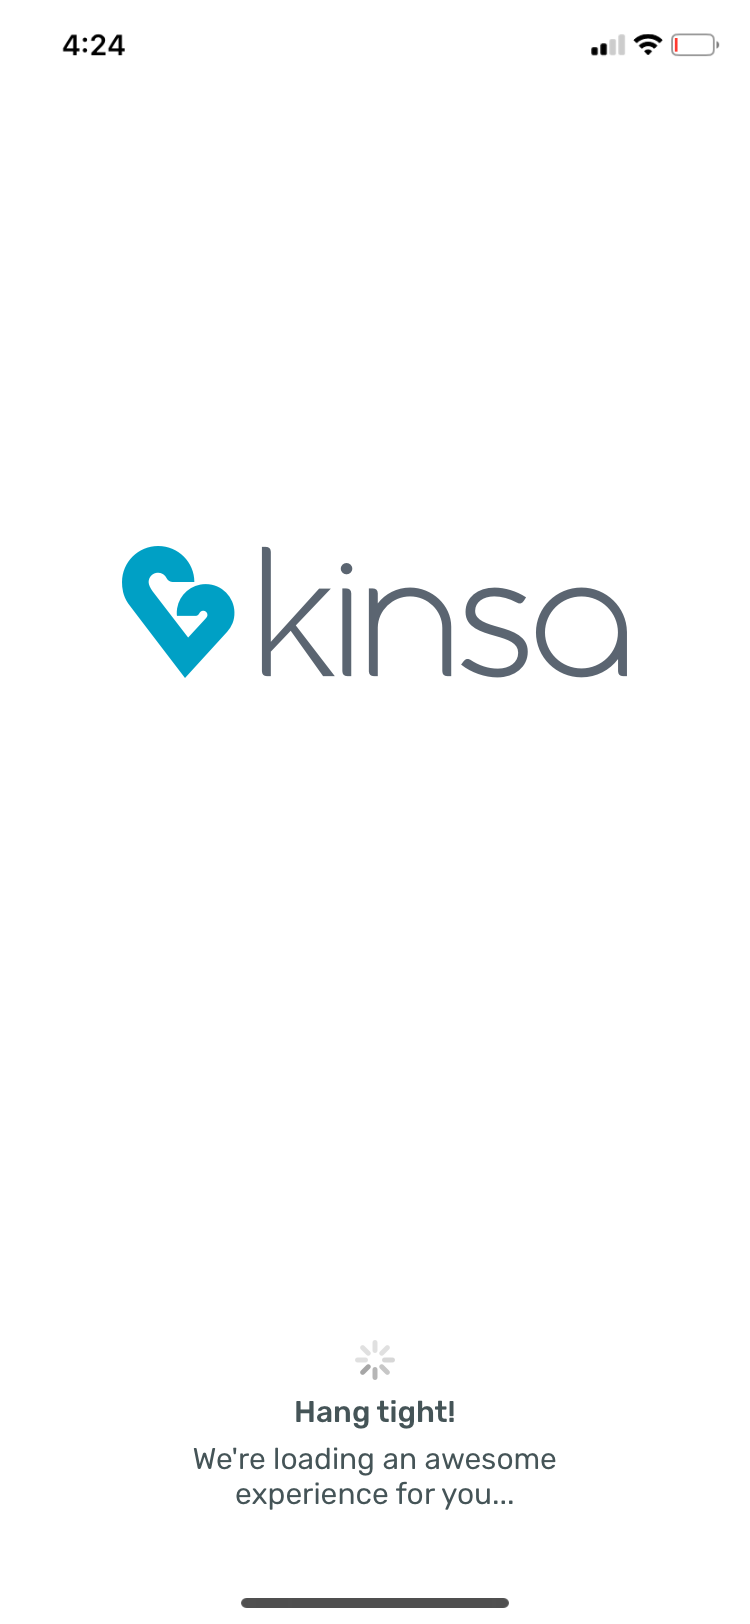 kinsa startup page